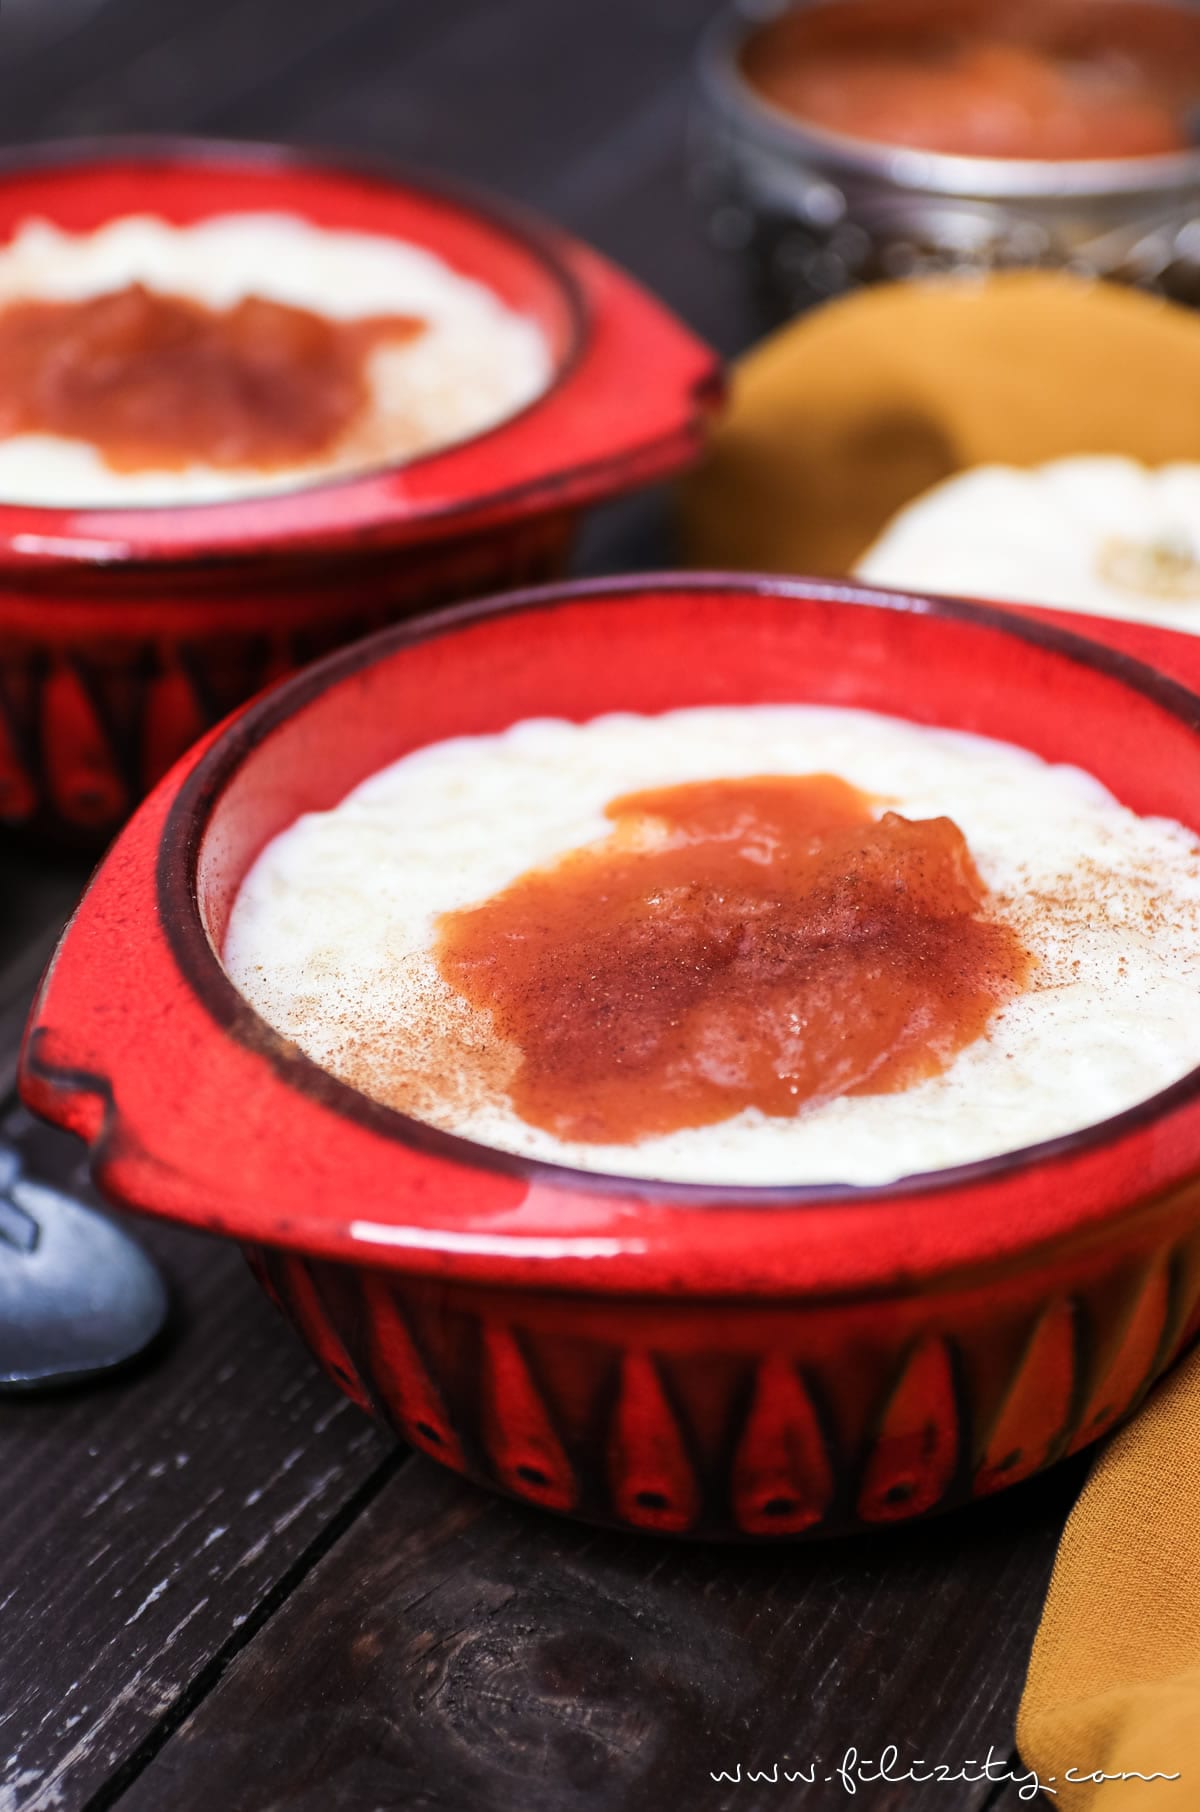 Herbst-Rezept: Türkischer Milchreis (Sütlac) mit Kürbis-Pflaumen-Kompott #kürbis #herbst #dessert